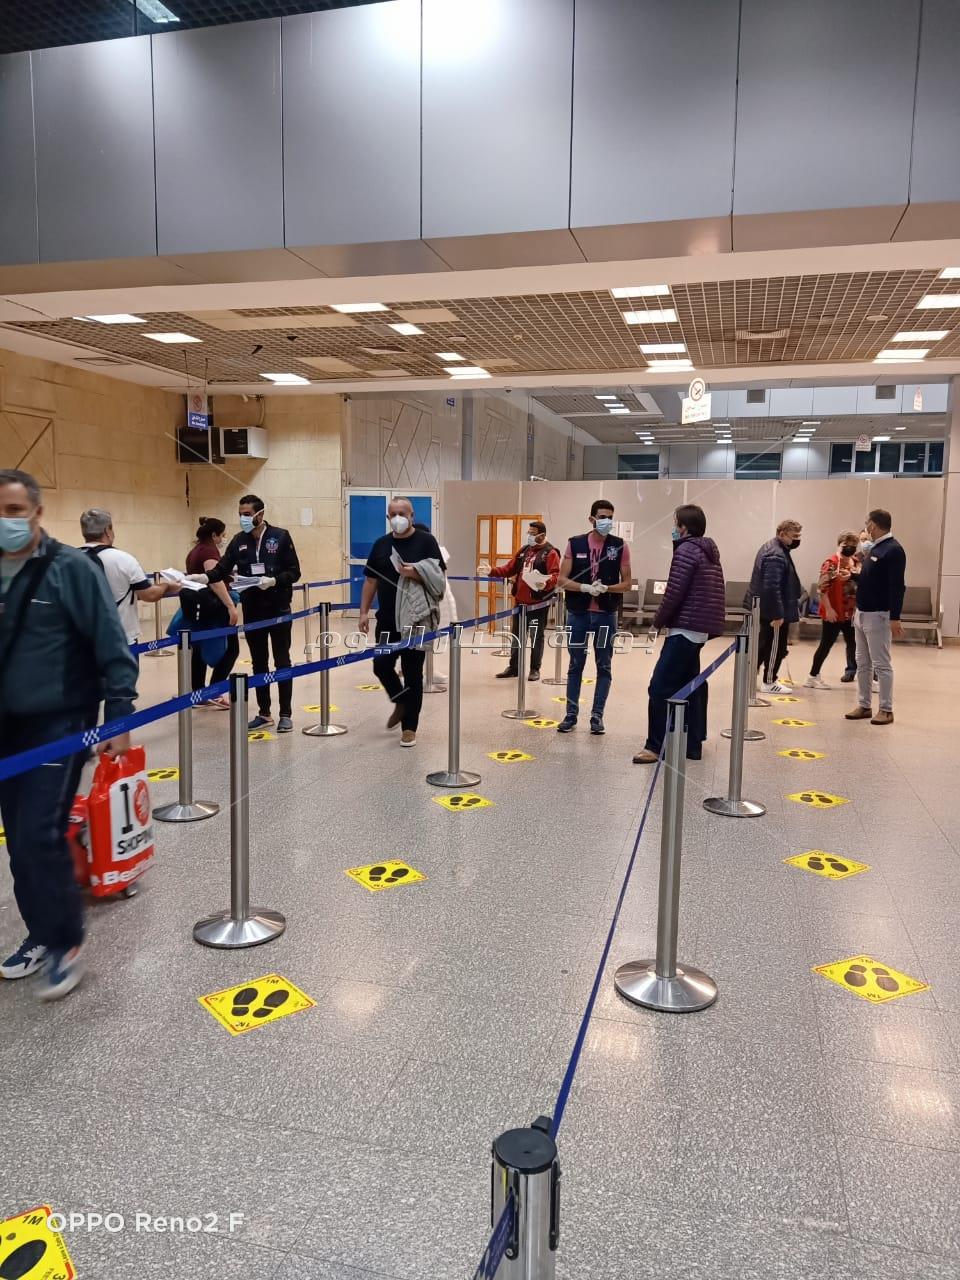  وصول سياح من جنسيات مختلفة في مطار شرم الشيخ  وسط انسيابية في الإجراءات